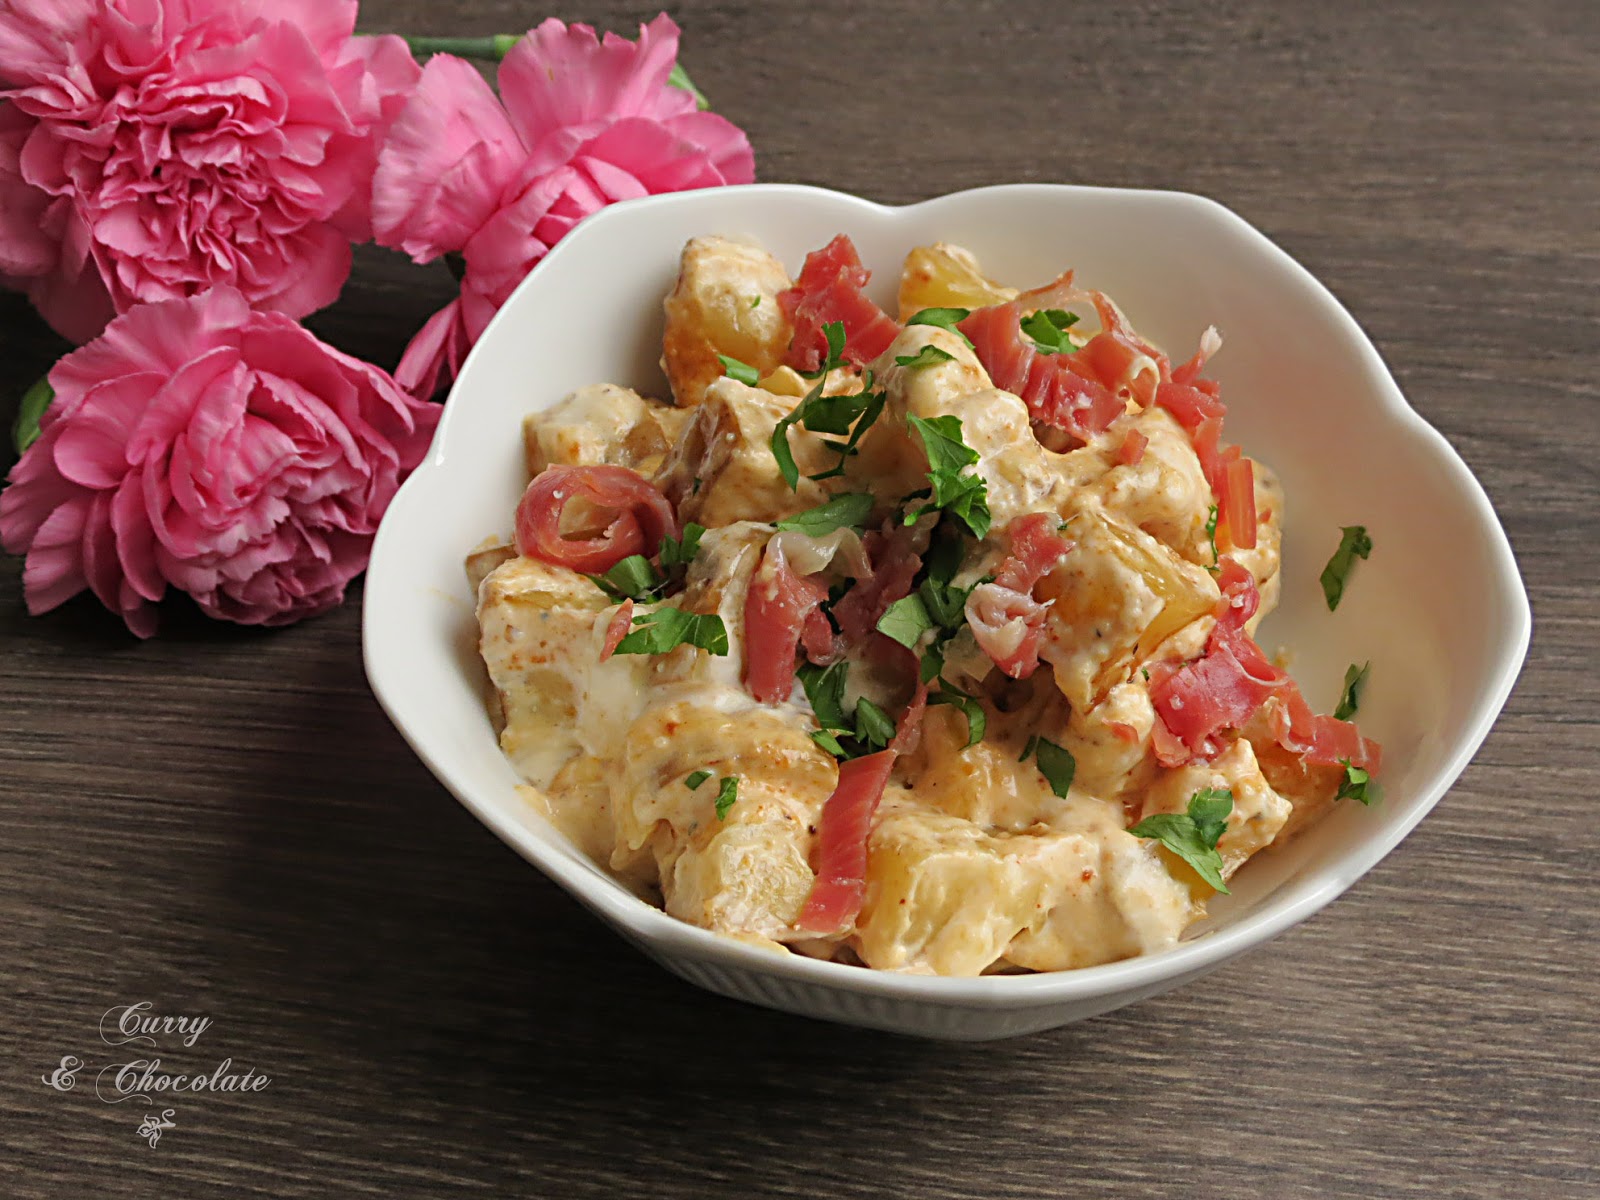 Ensalada de patatas asadas con jamón y salsa de yogur – Baked potato salad with prosciutto in a yogurt dressing